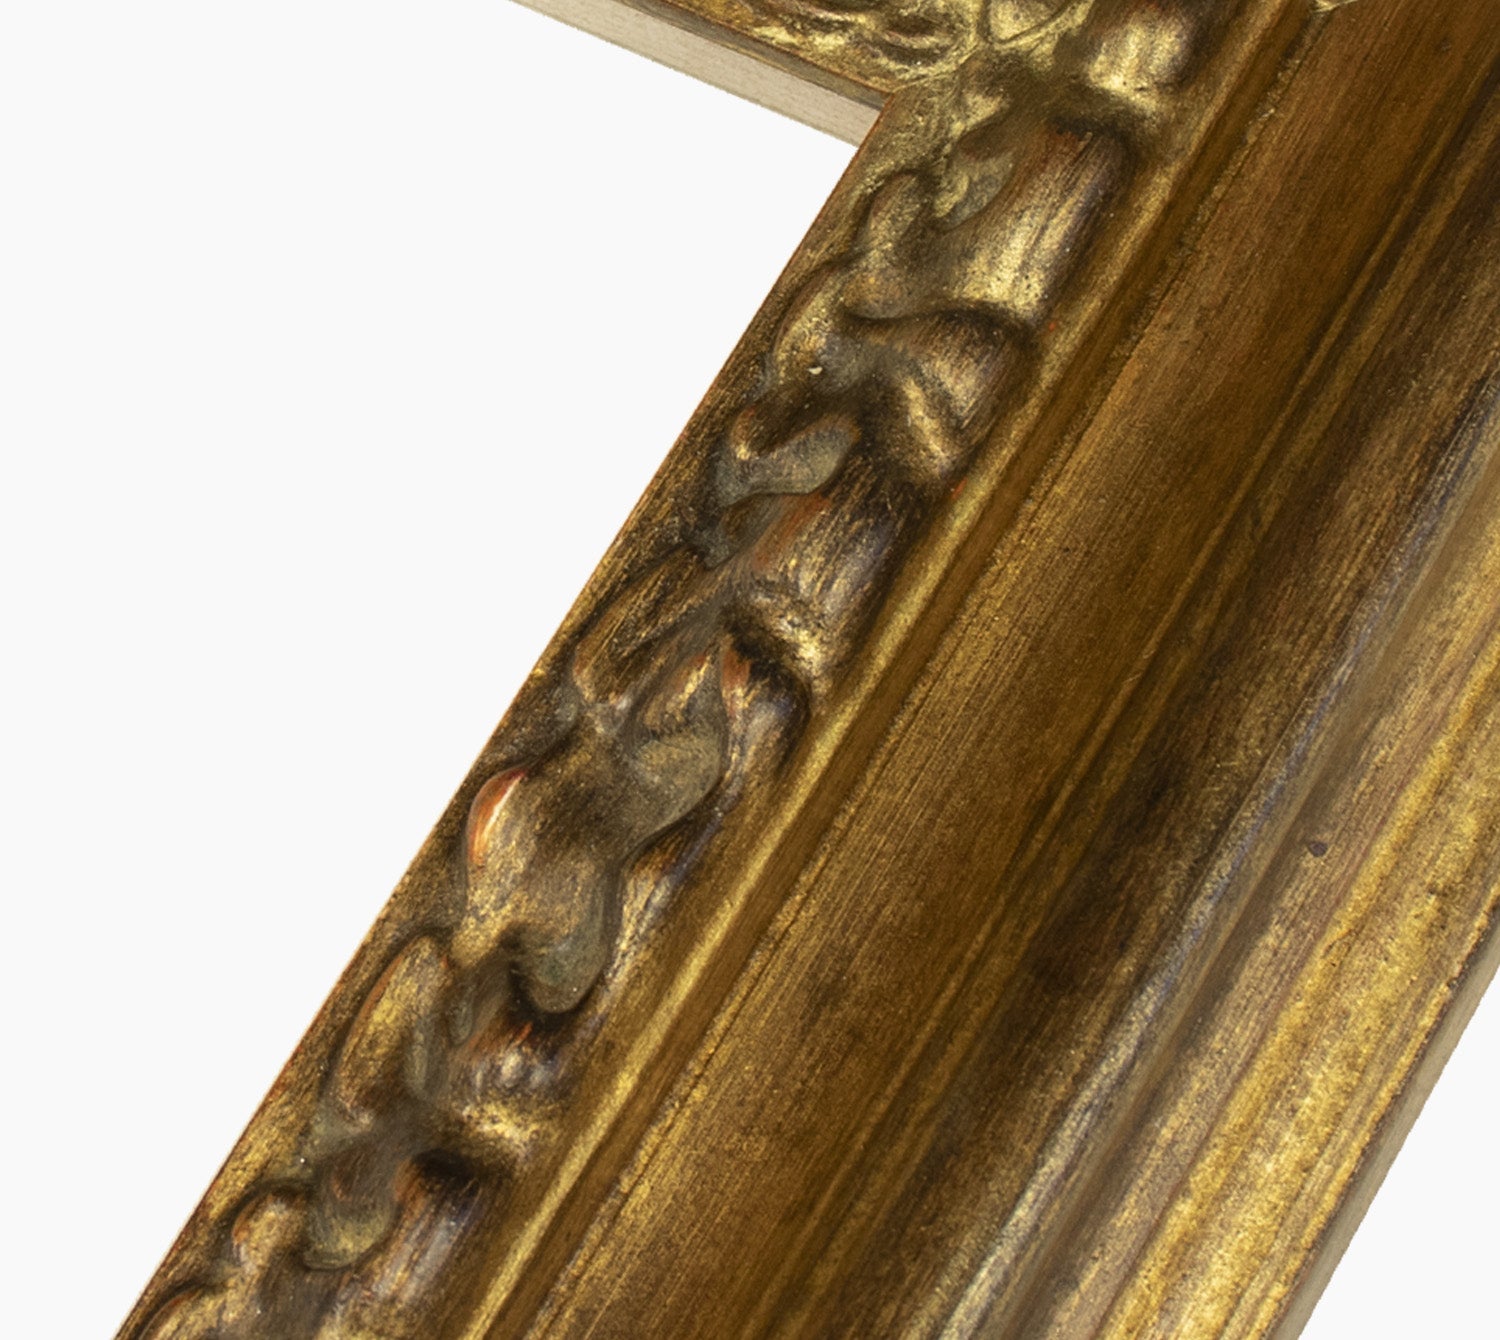 506.230 cadre en bois à la feuille d'or antique mesure de profil 80x40 mm Lombarda cornici S.n.c.